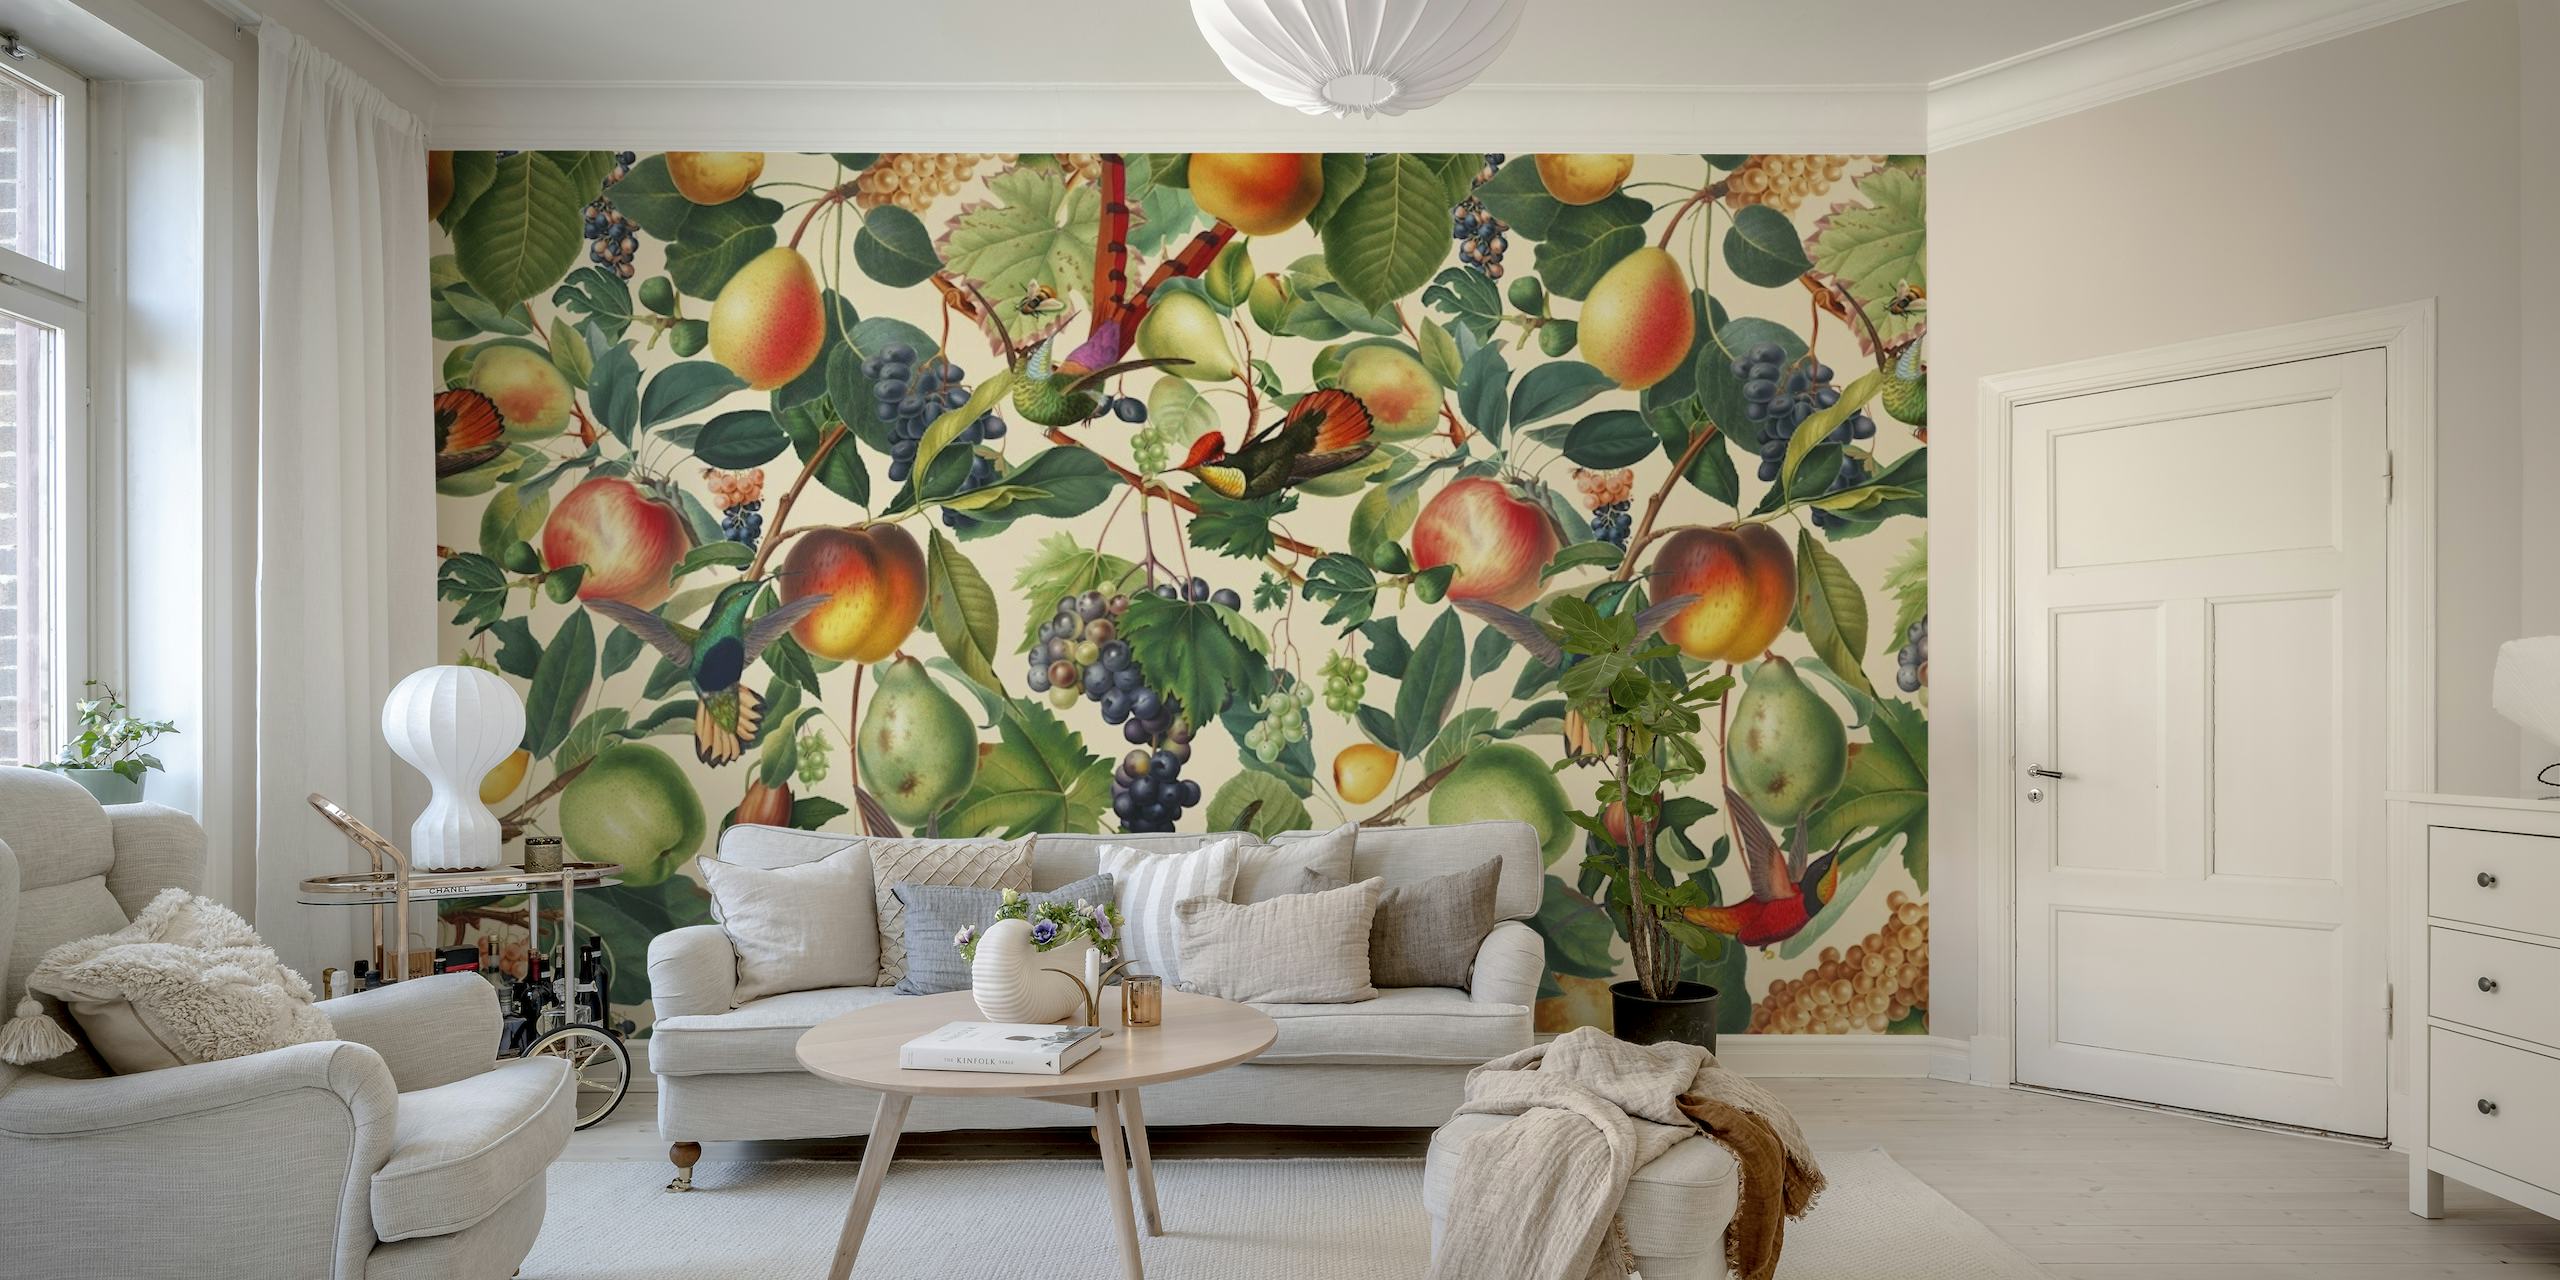 Zidna slika na temu ljeta s raznim voćem poput breskvi i grožđa usred uzorka zelenog lišća